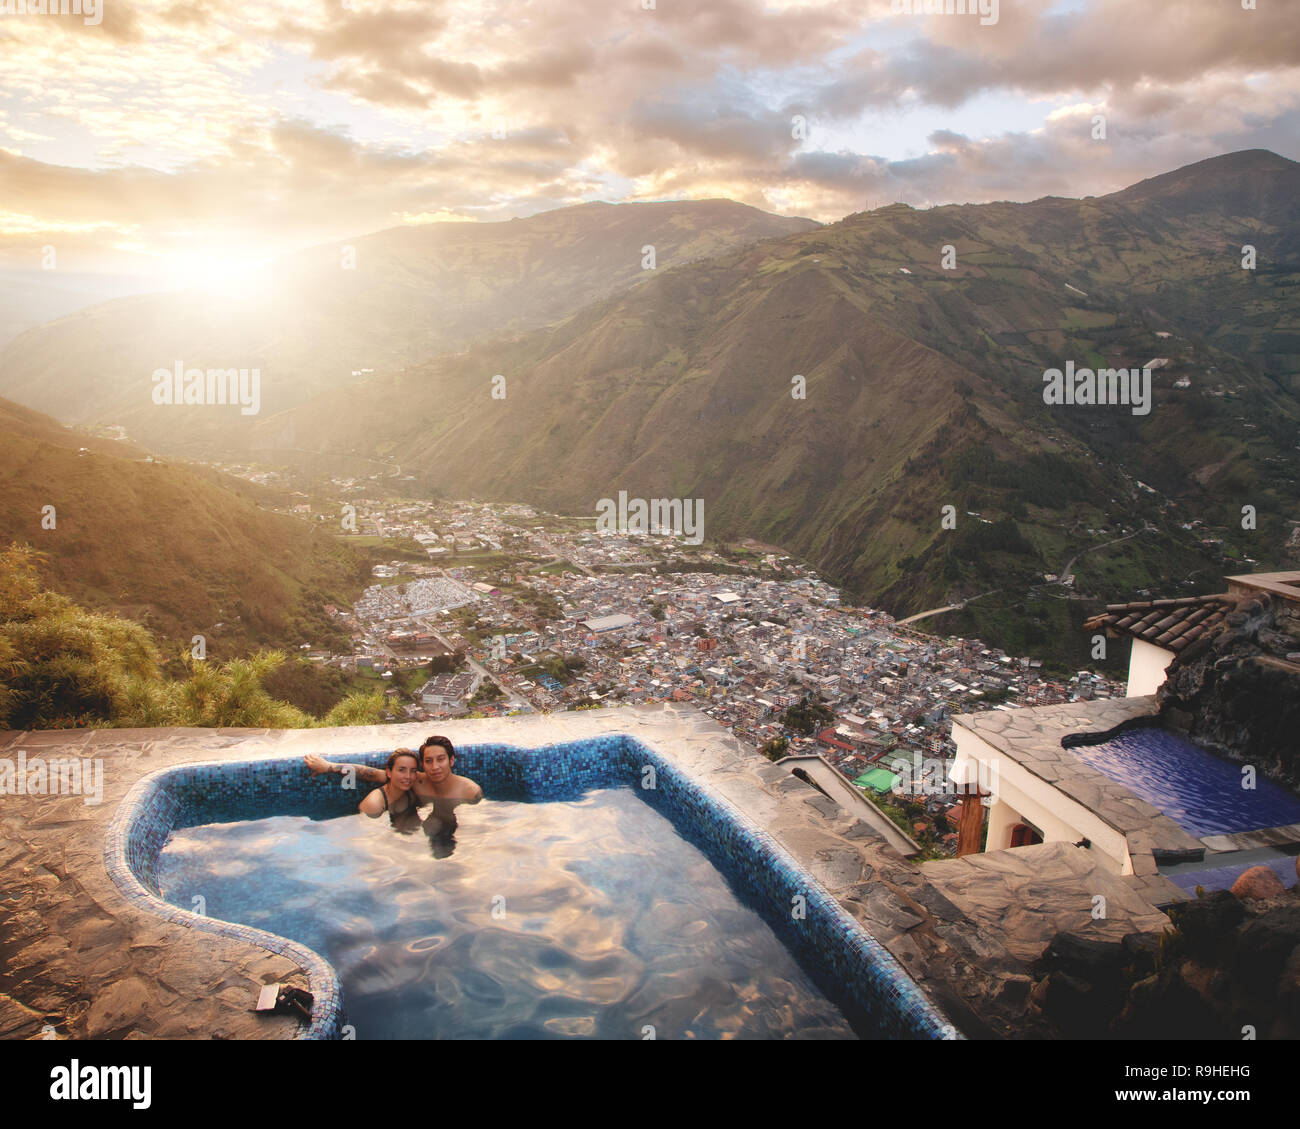 Spa Baños de Agua Santa Tungurahua Equateur Province Banque D'Images